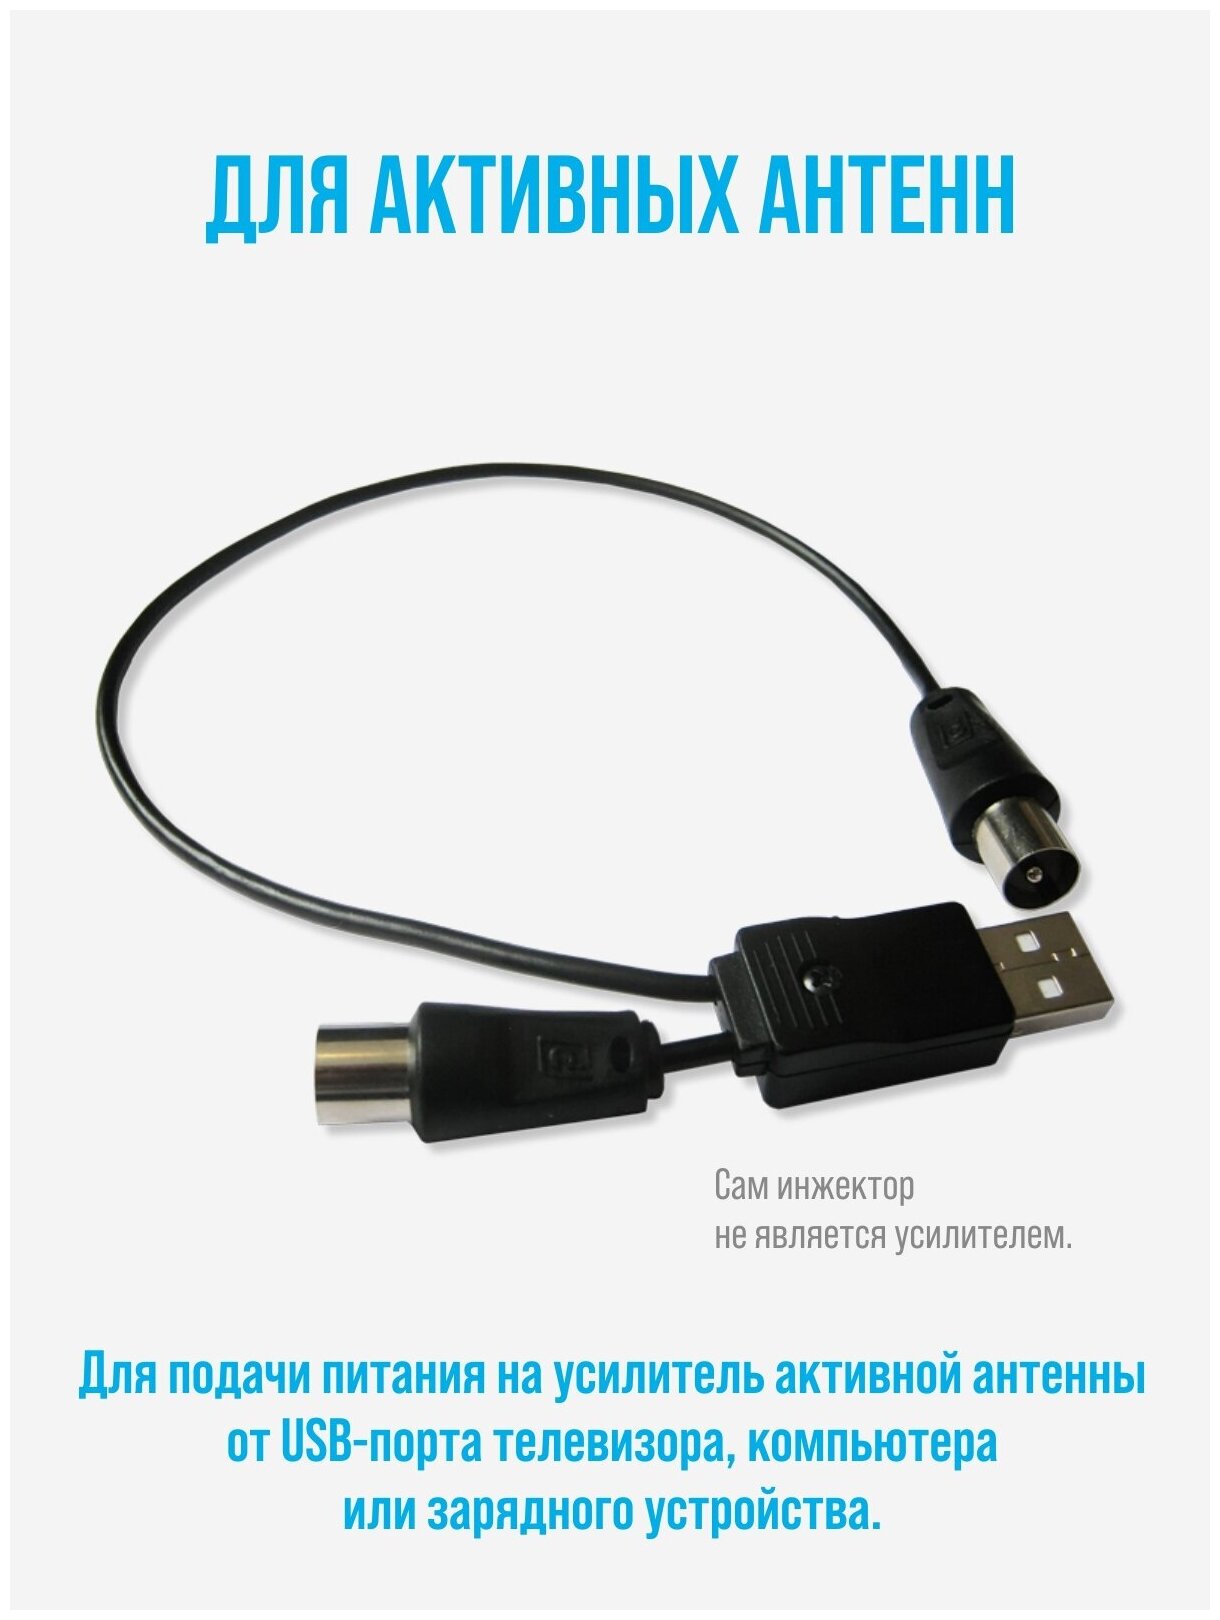 USB-инжектор питания активных антенн РЭМО BAS-8001 — купить в интернет-магазине по низкой цене на Яндекс Маркете